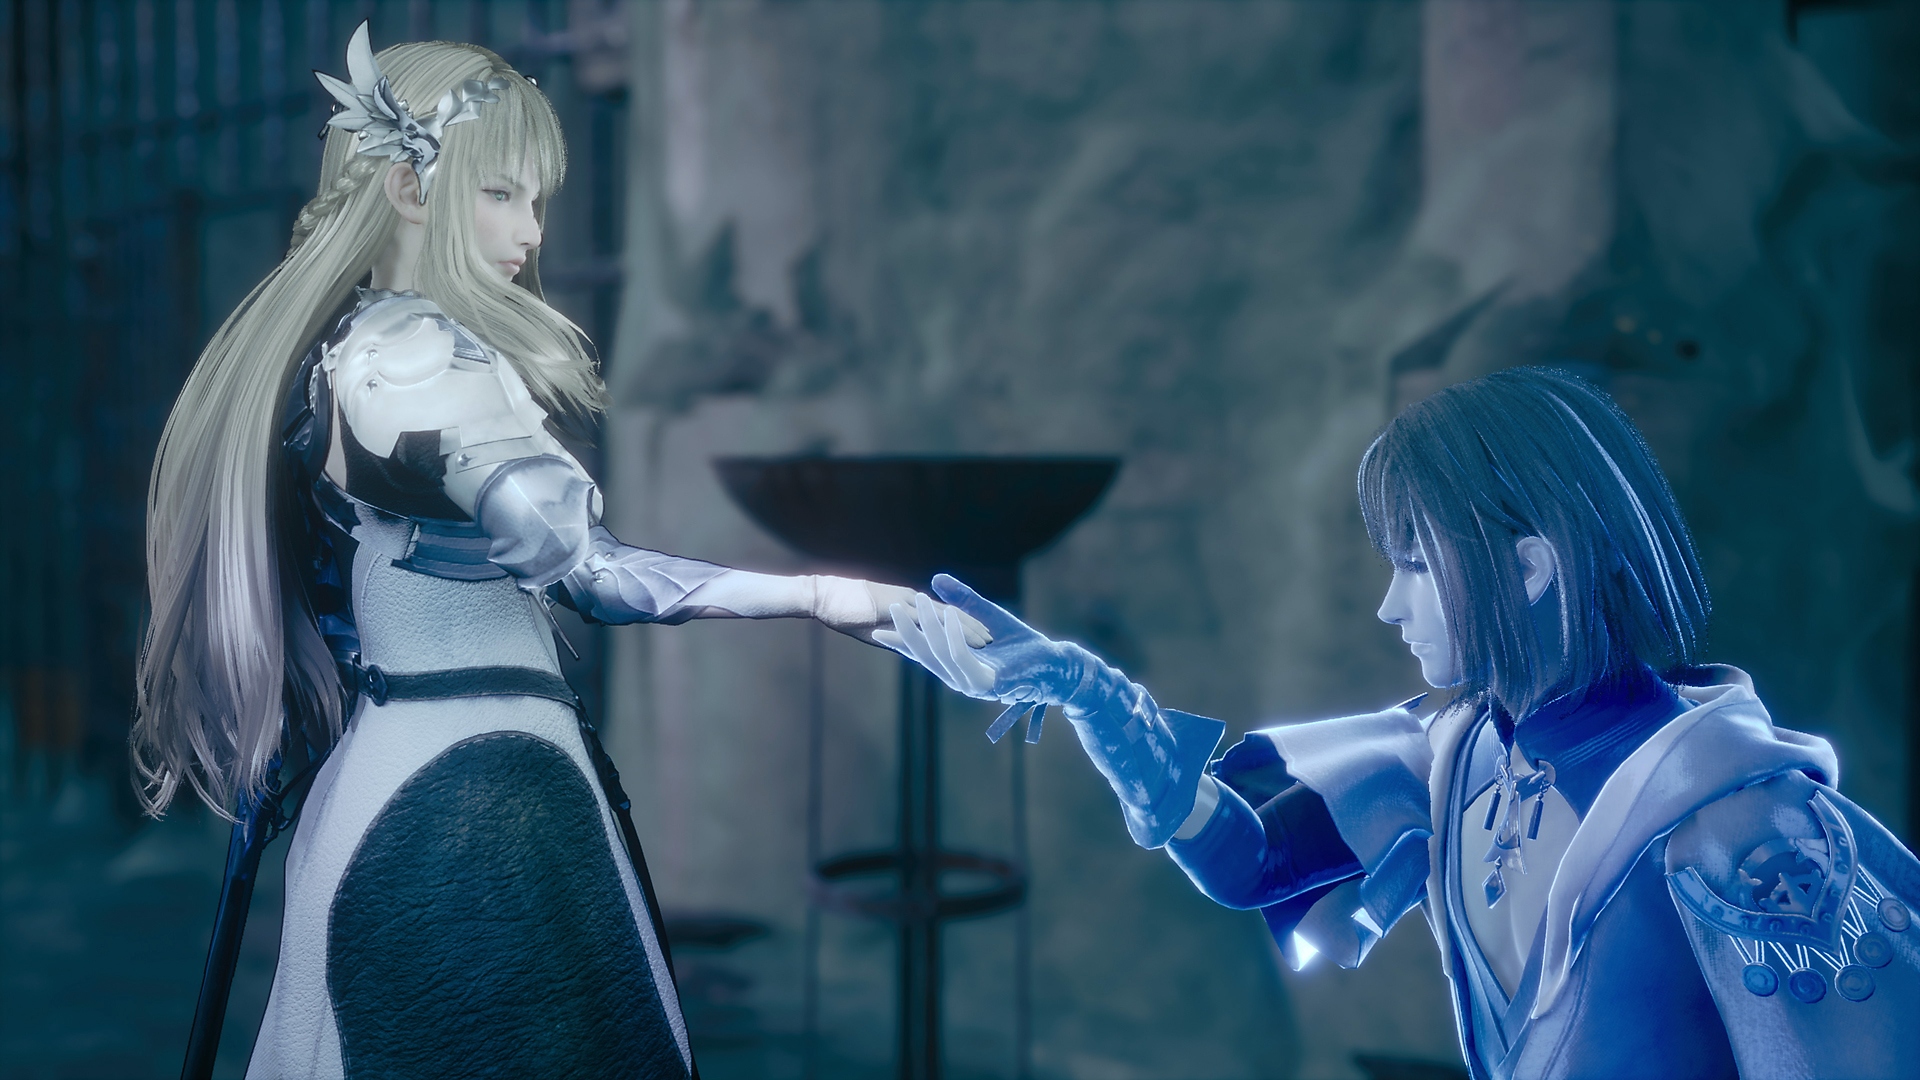 Valkyrie Elysium - Capture d'écran montrant un chevalier bleu lumineux s'agenouillant devant une princesse